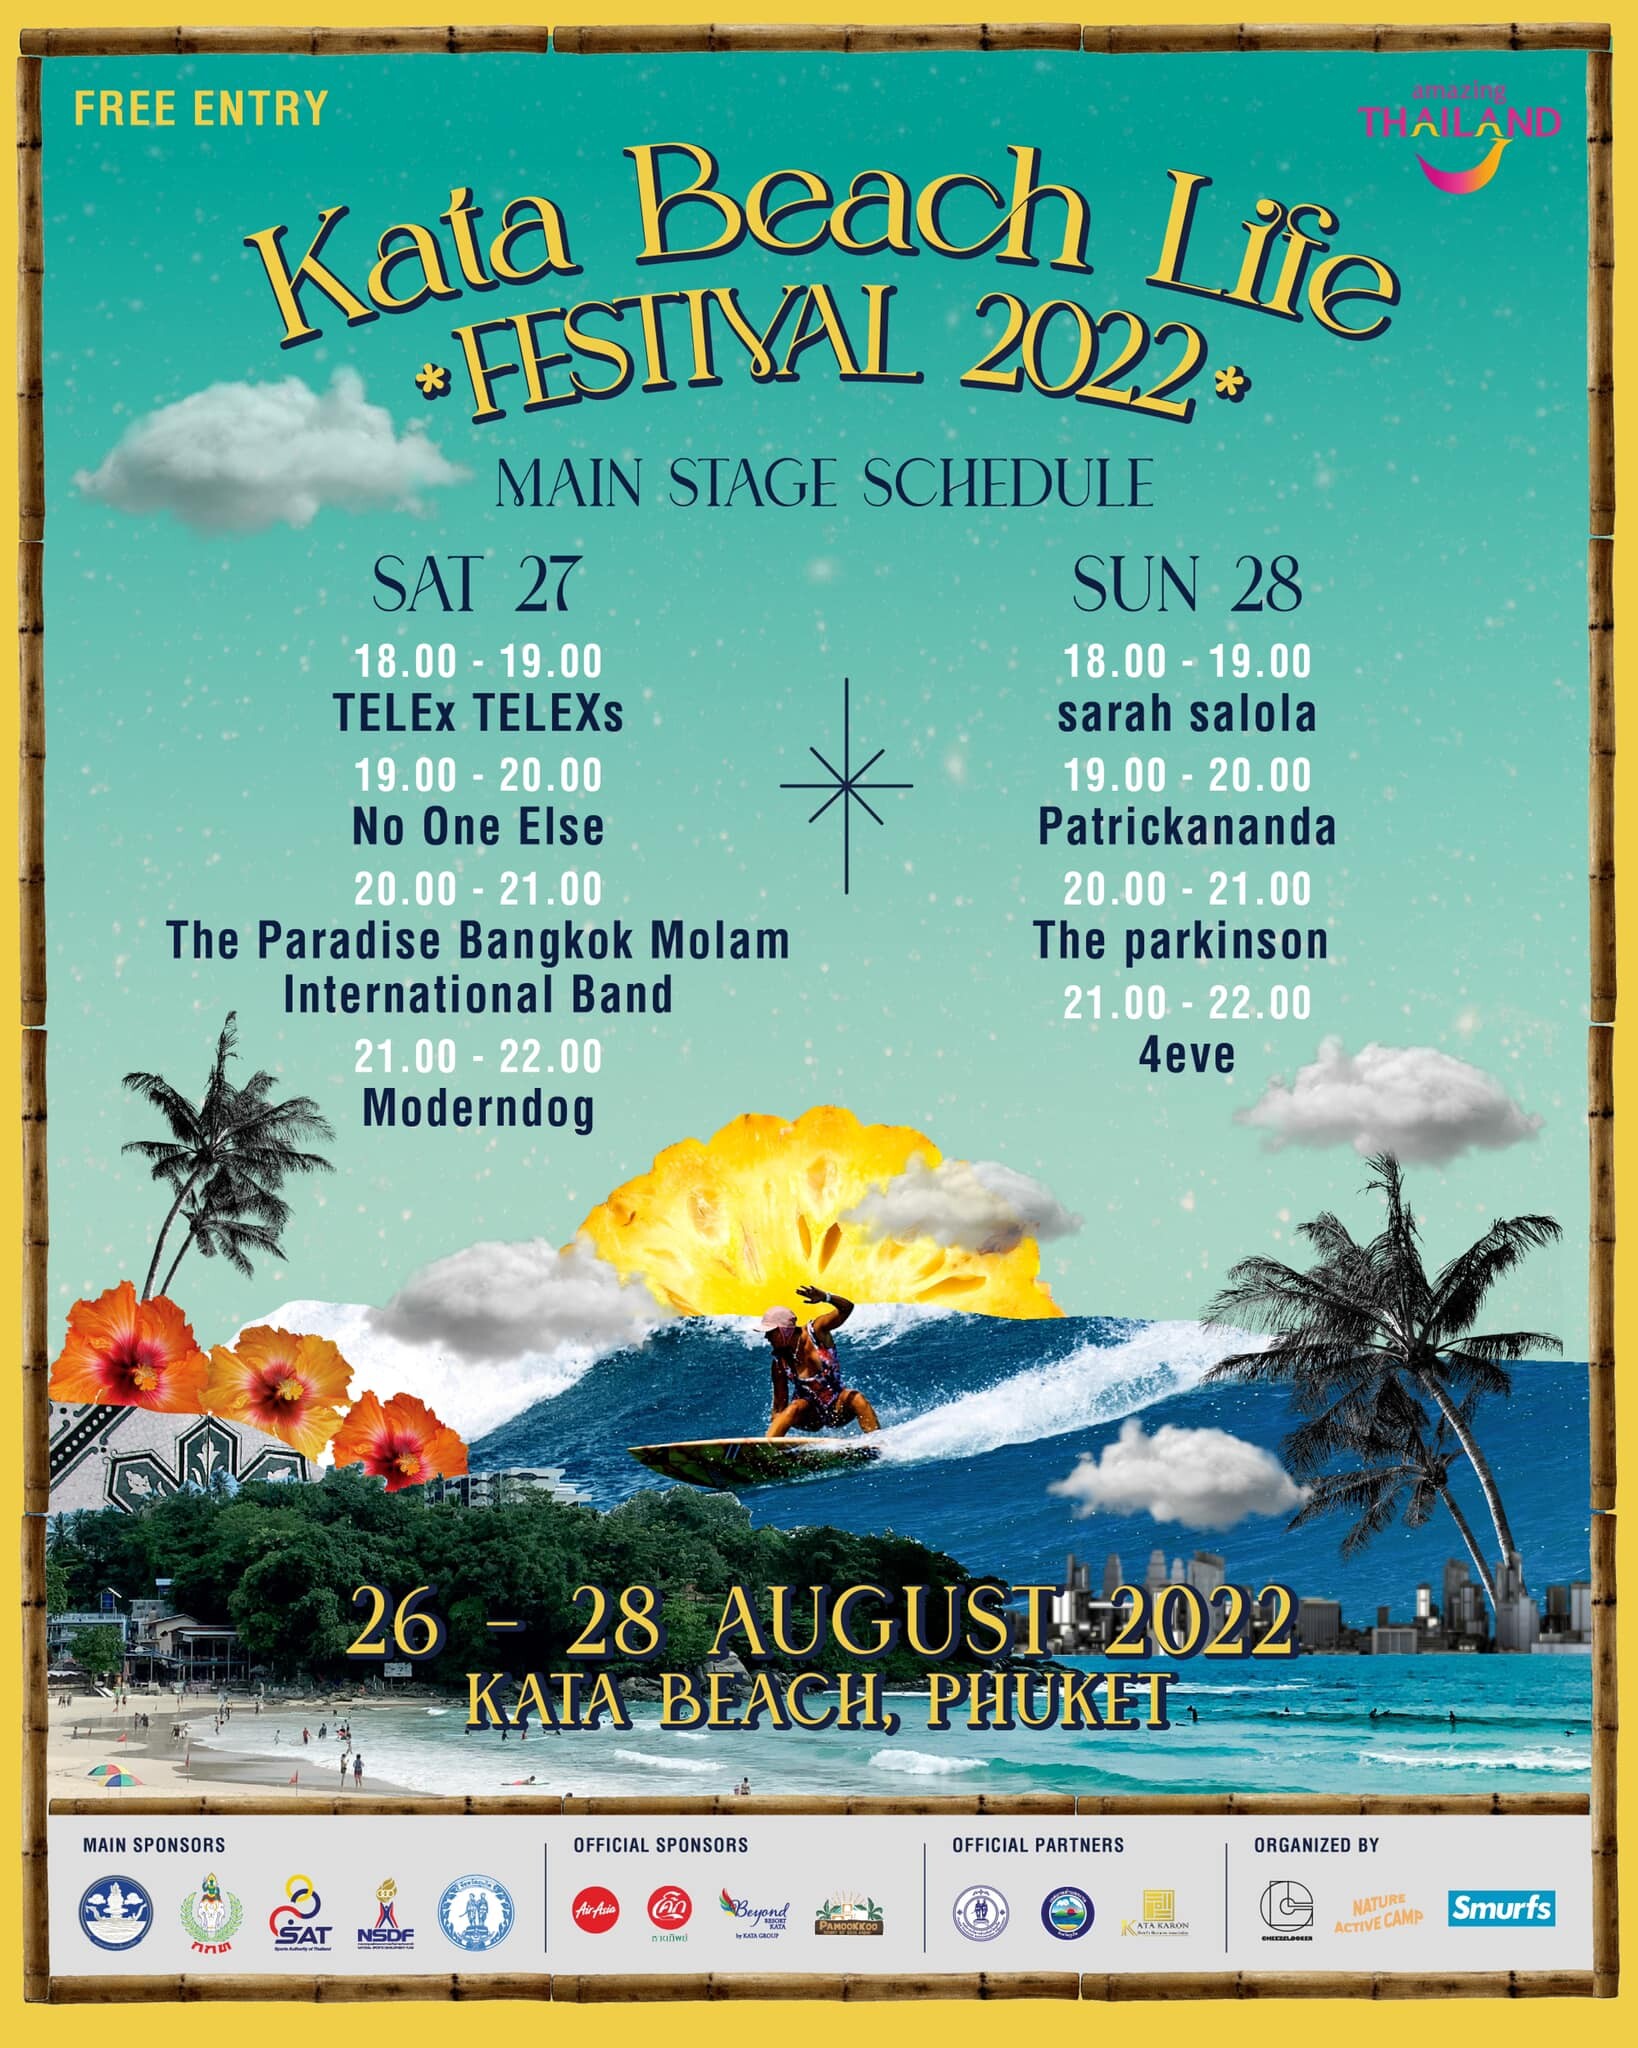 Kata Beach Life Festival 2022 เทศกาลสุดชิลล์ริมหาดกะตะ ที่อยากคุณชวนมา